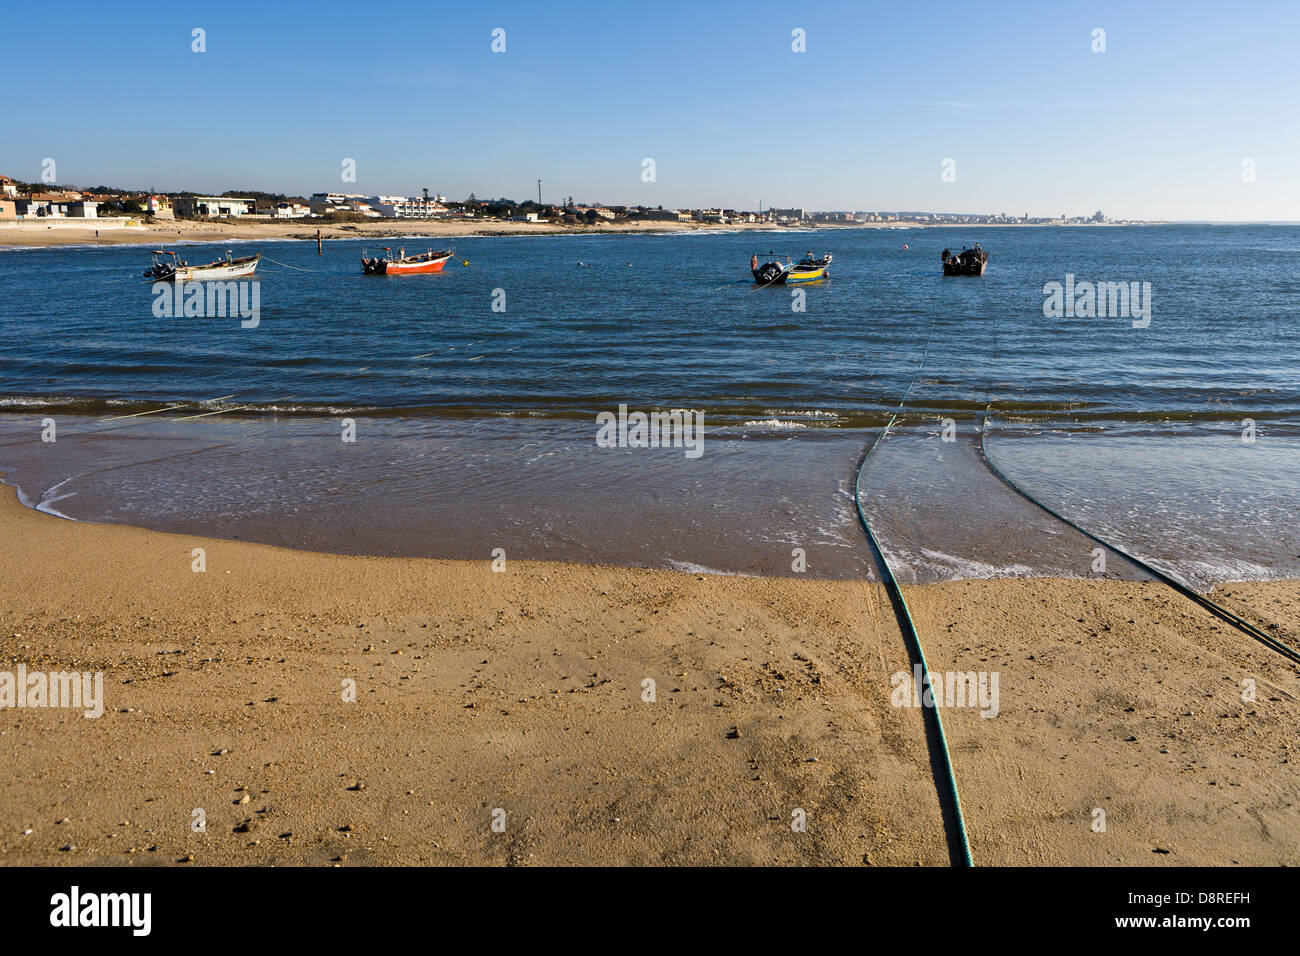 Fish boats, Aguda Portugal Stock Photo